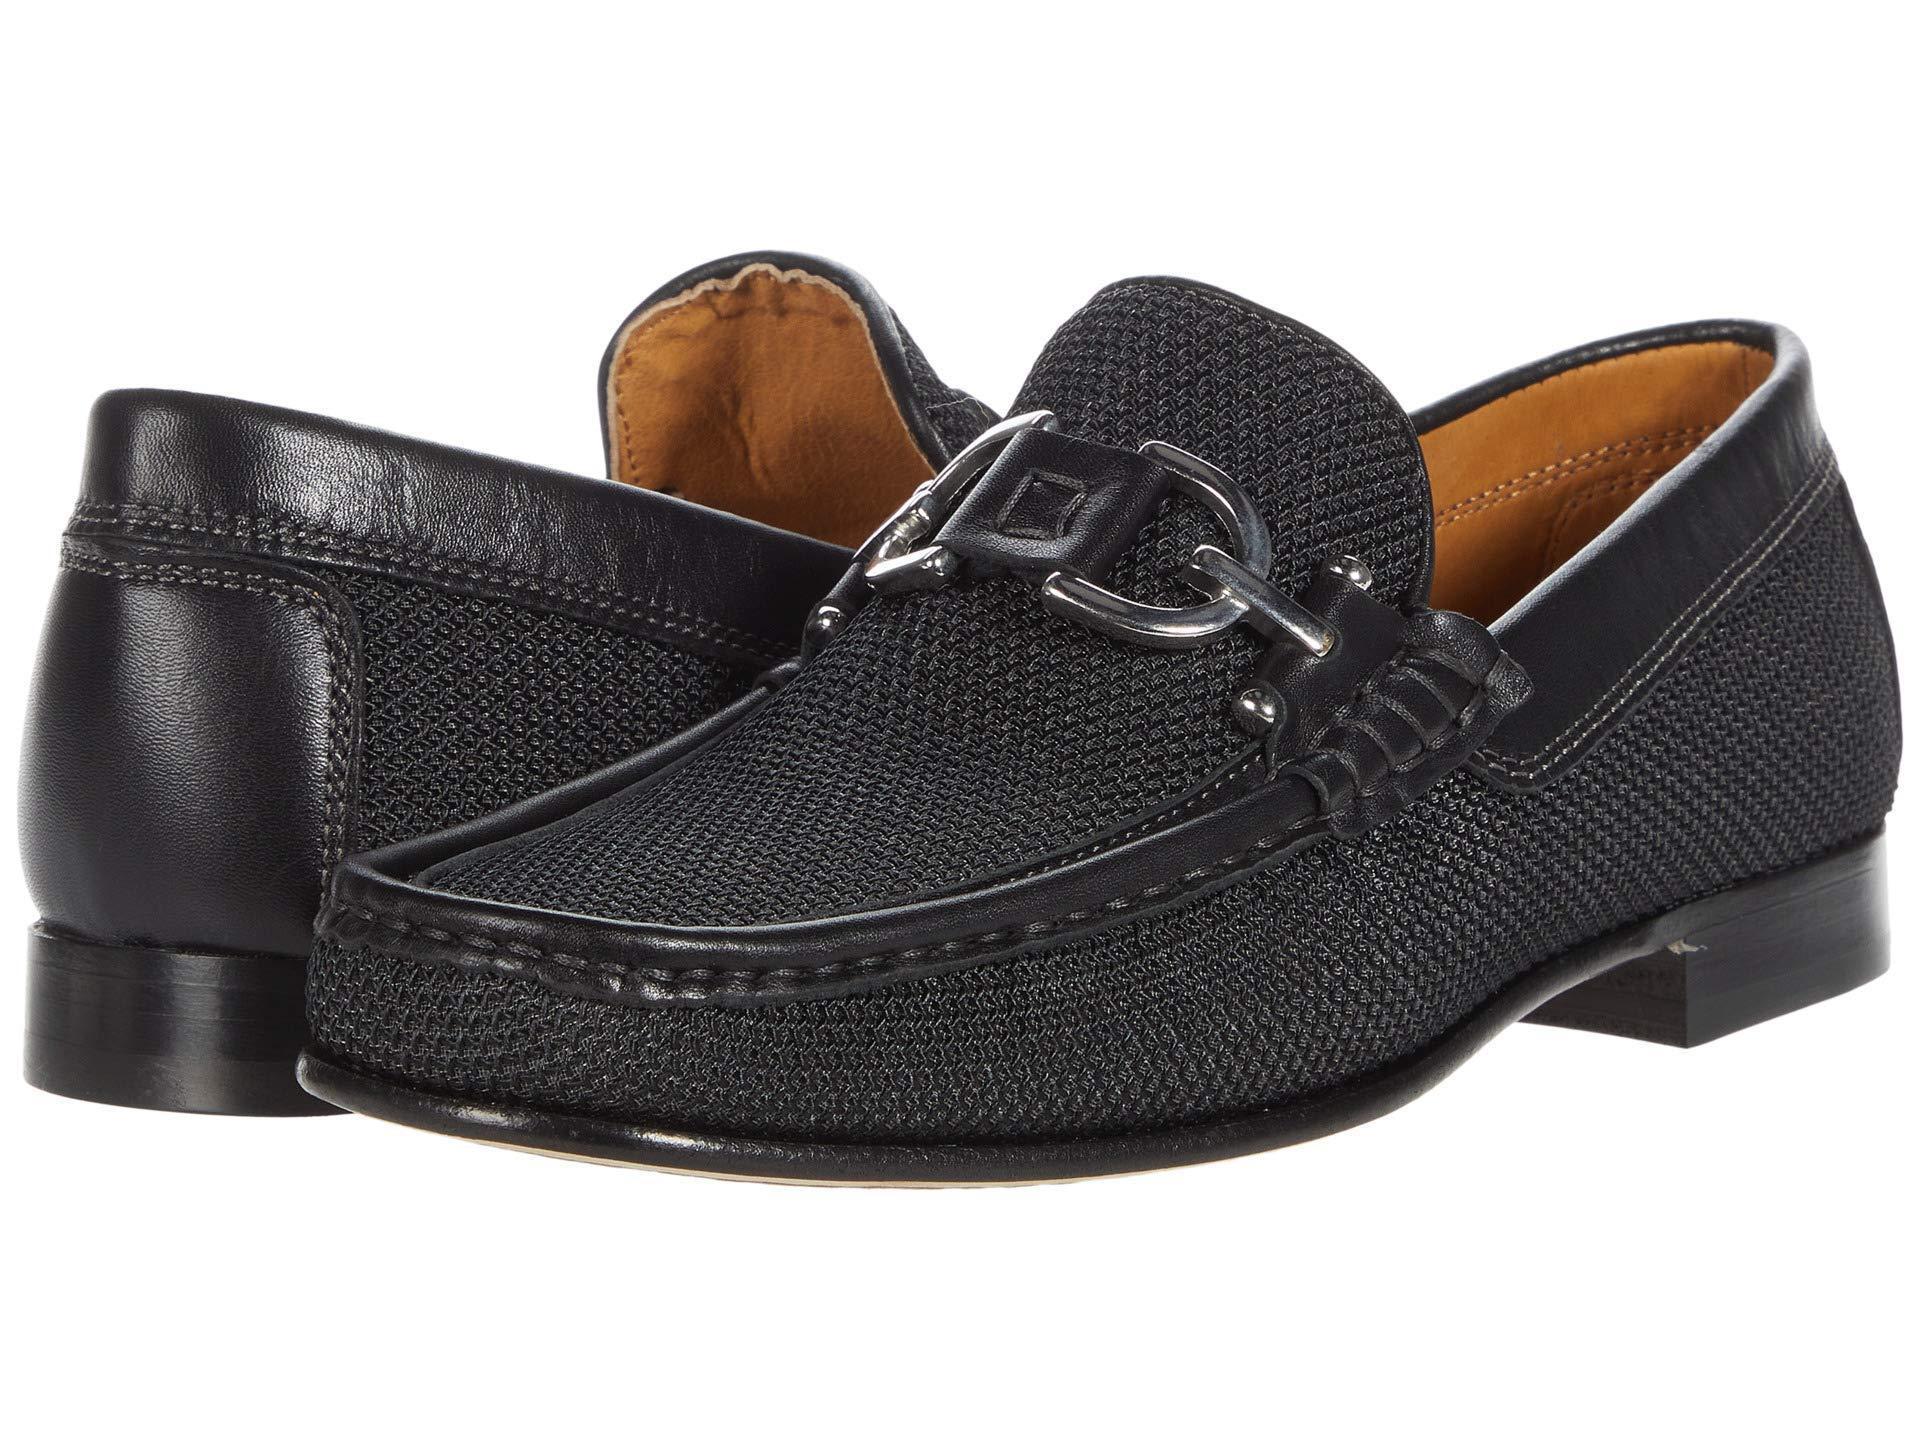 Donald J Pliner Leather Loafer in Black for Men - Lyst